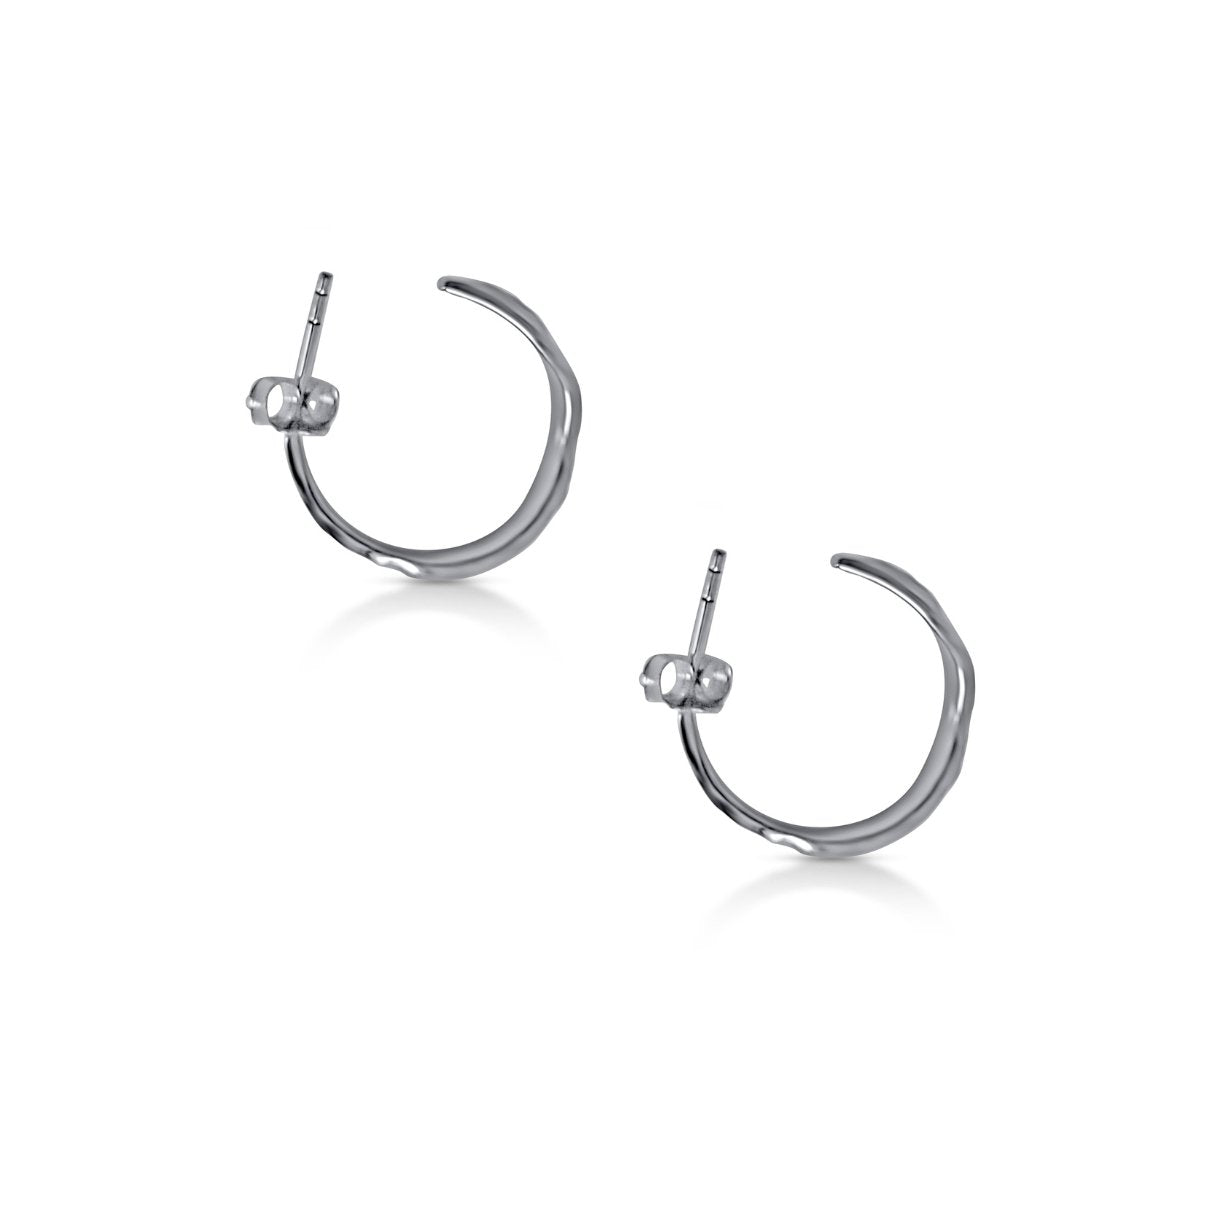 Ilana Hoop earrings - nature textured elegant hoops earrings